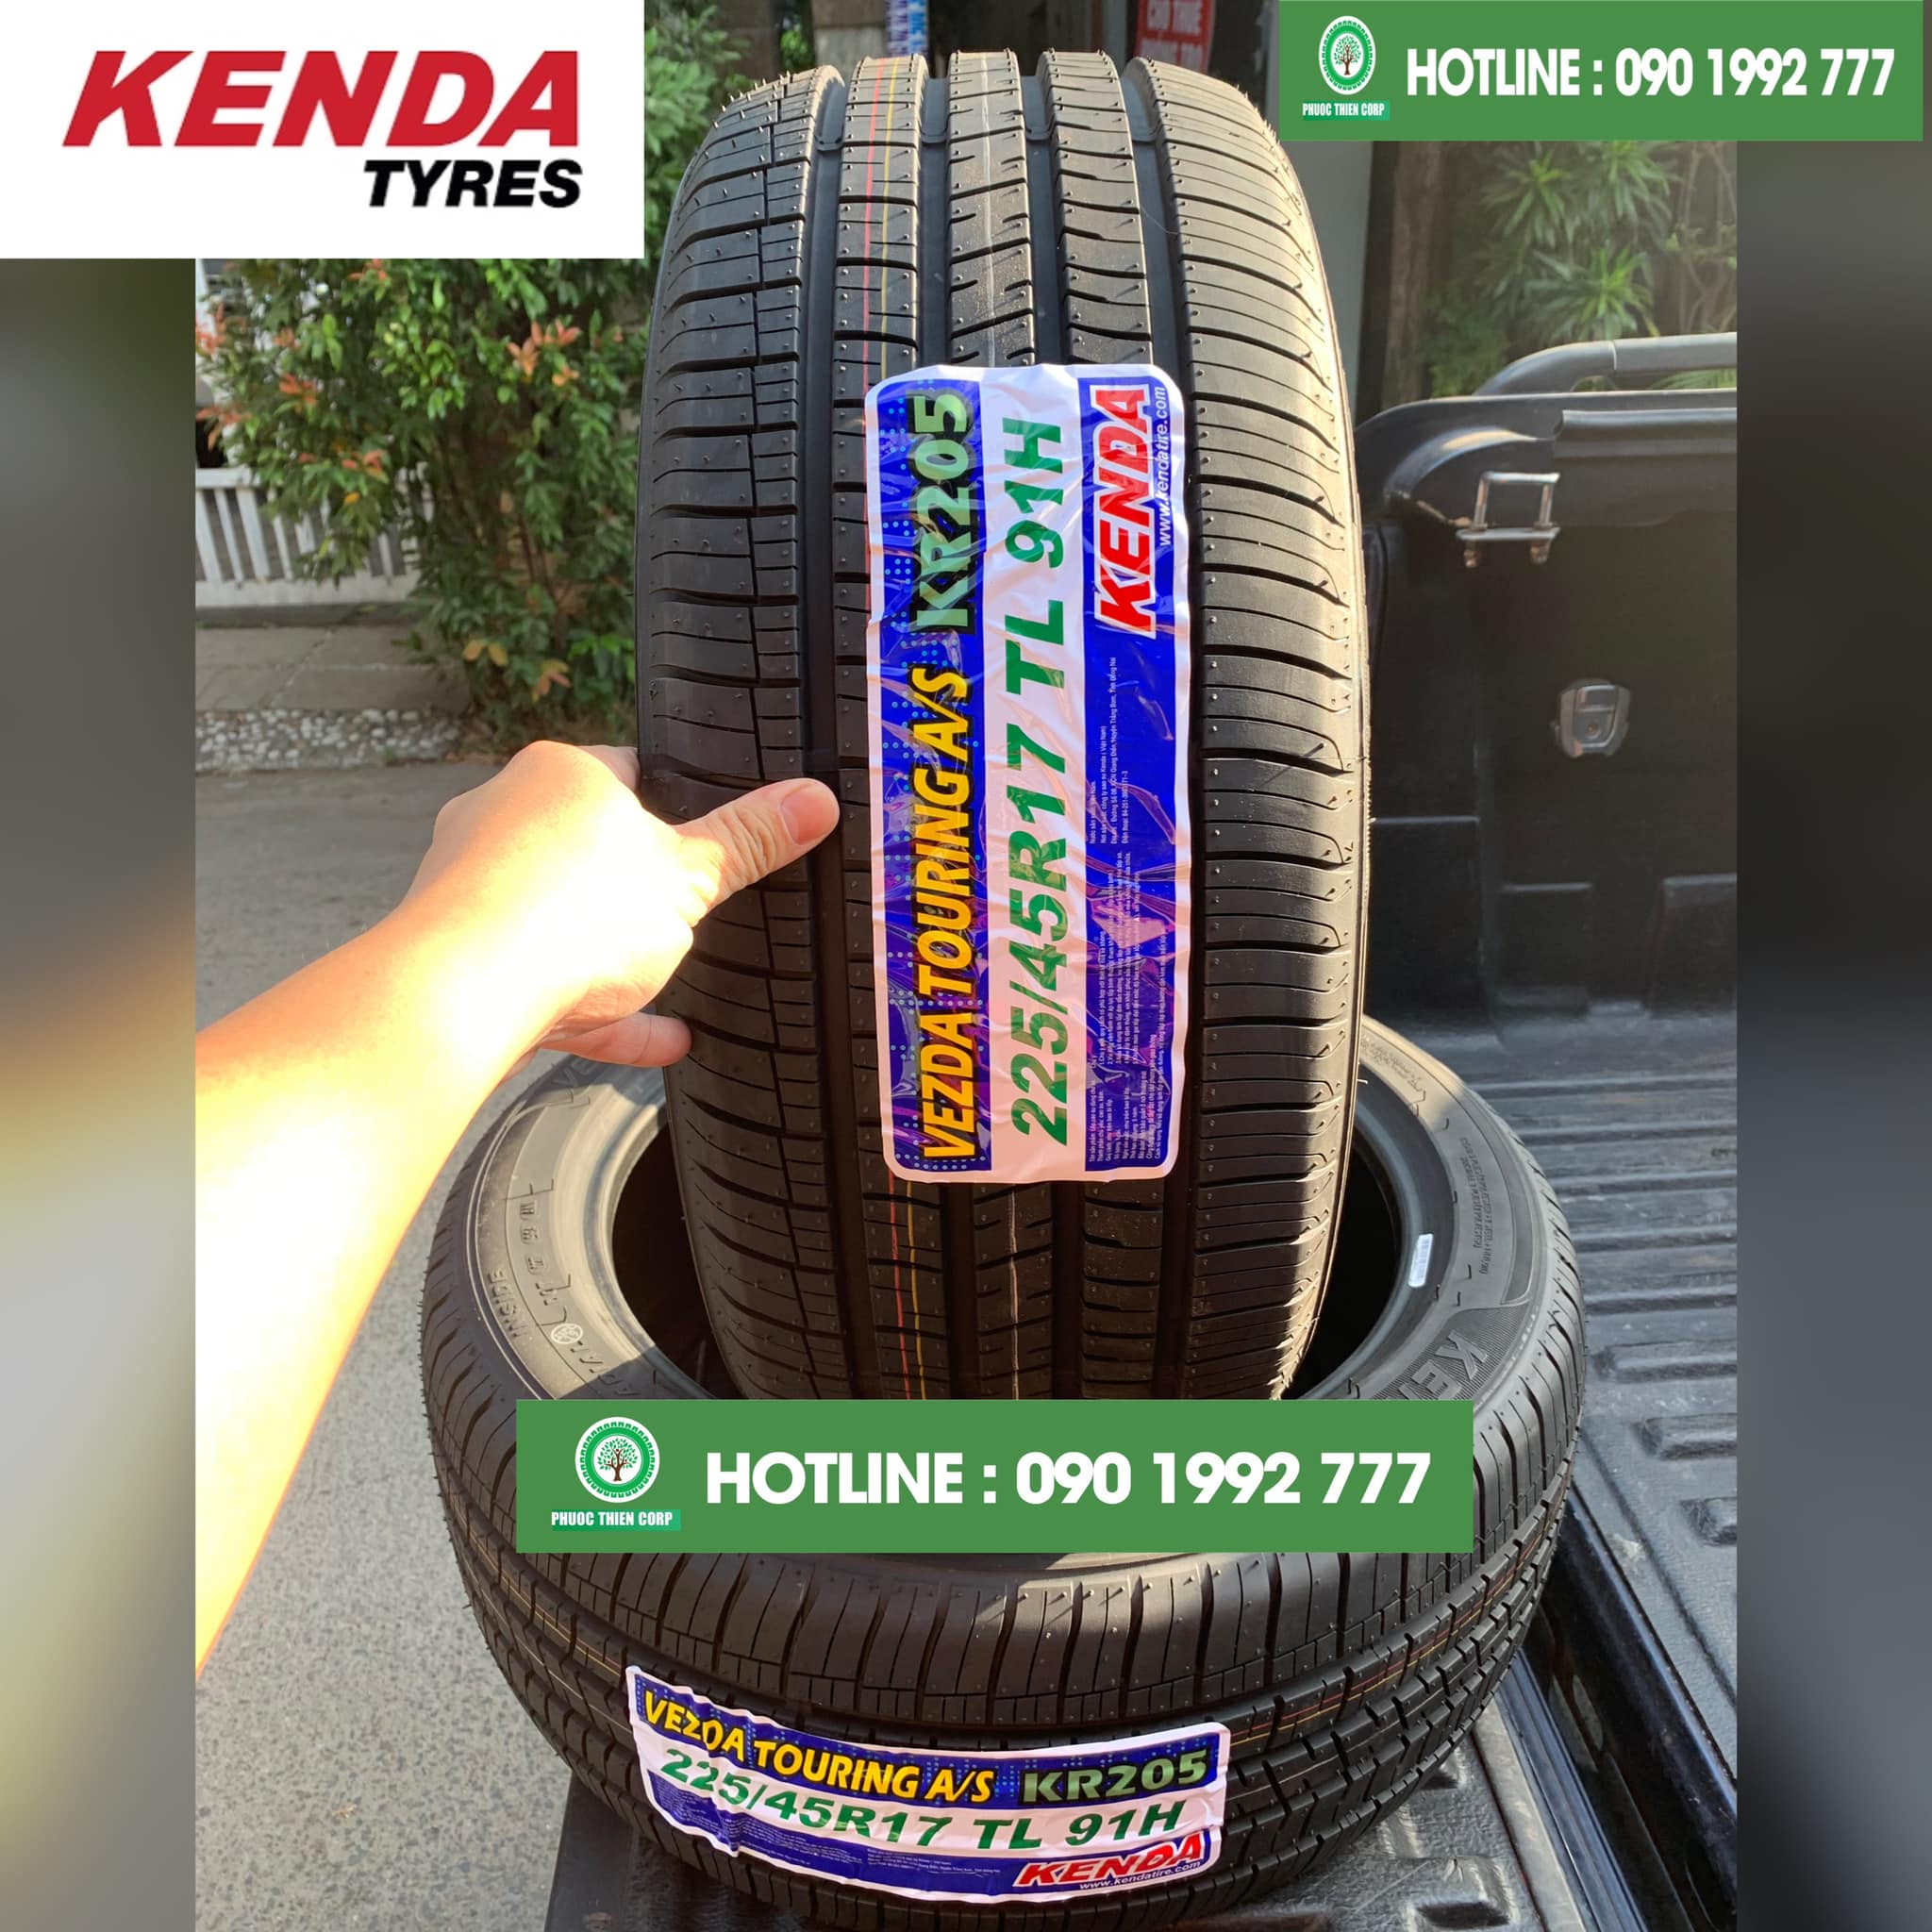 Gợi ý : Thay lốp KENDA (hàng xuất khẩu) cho xe Hyundai Elantra.